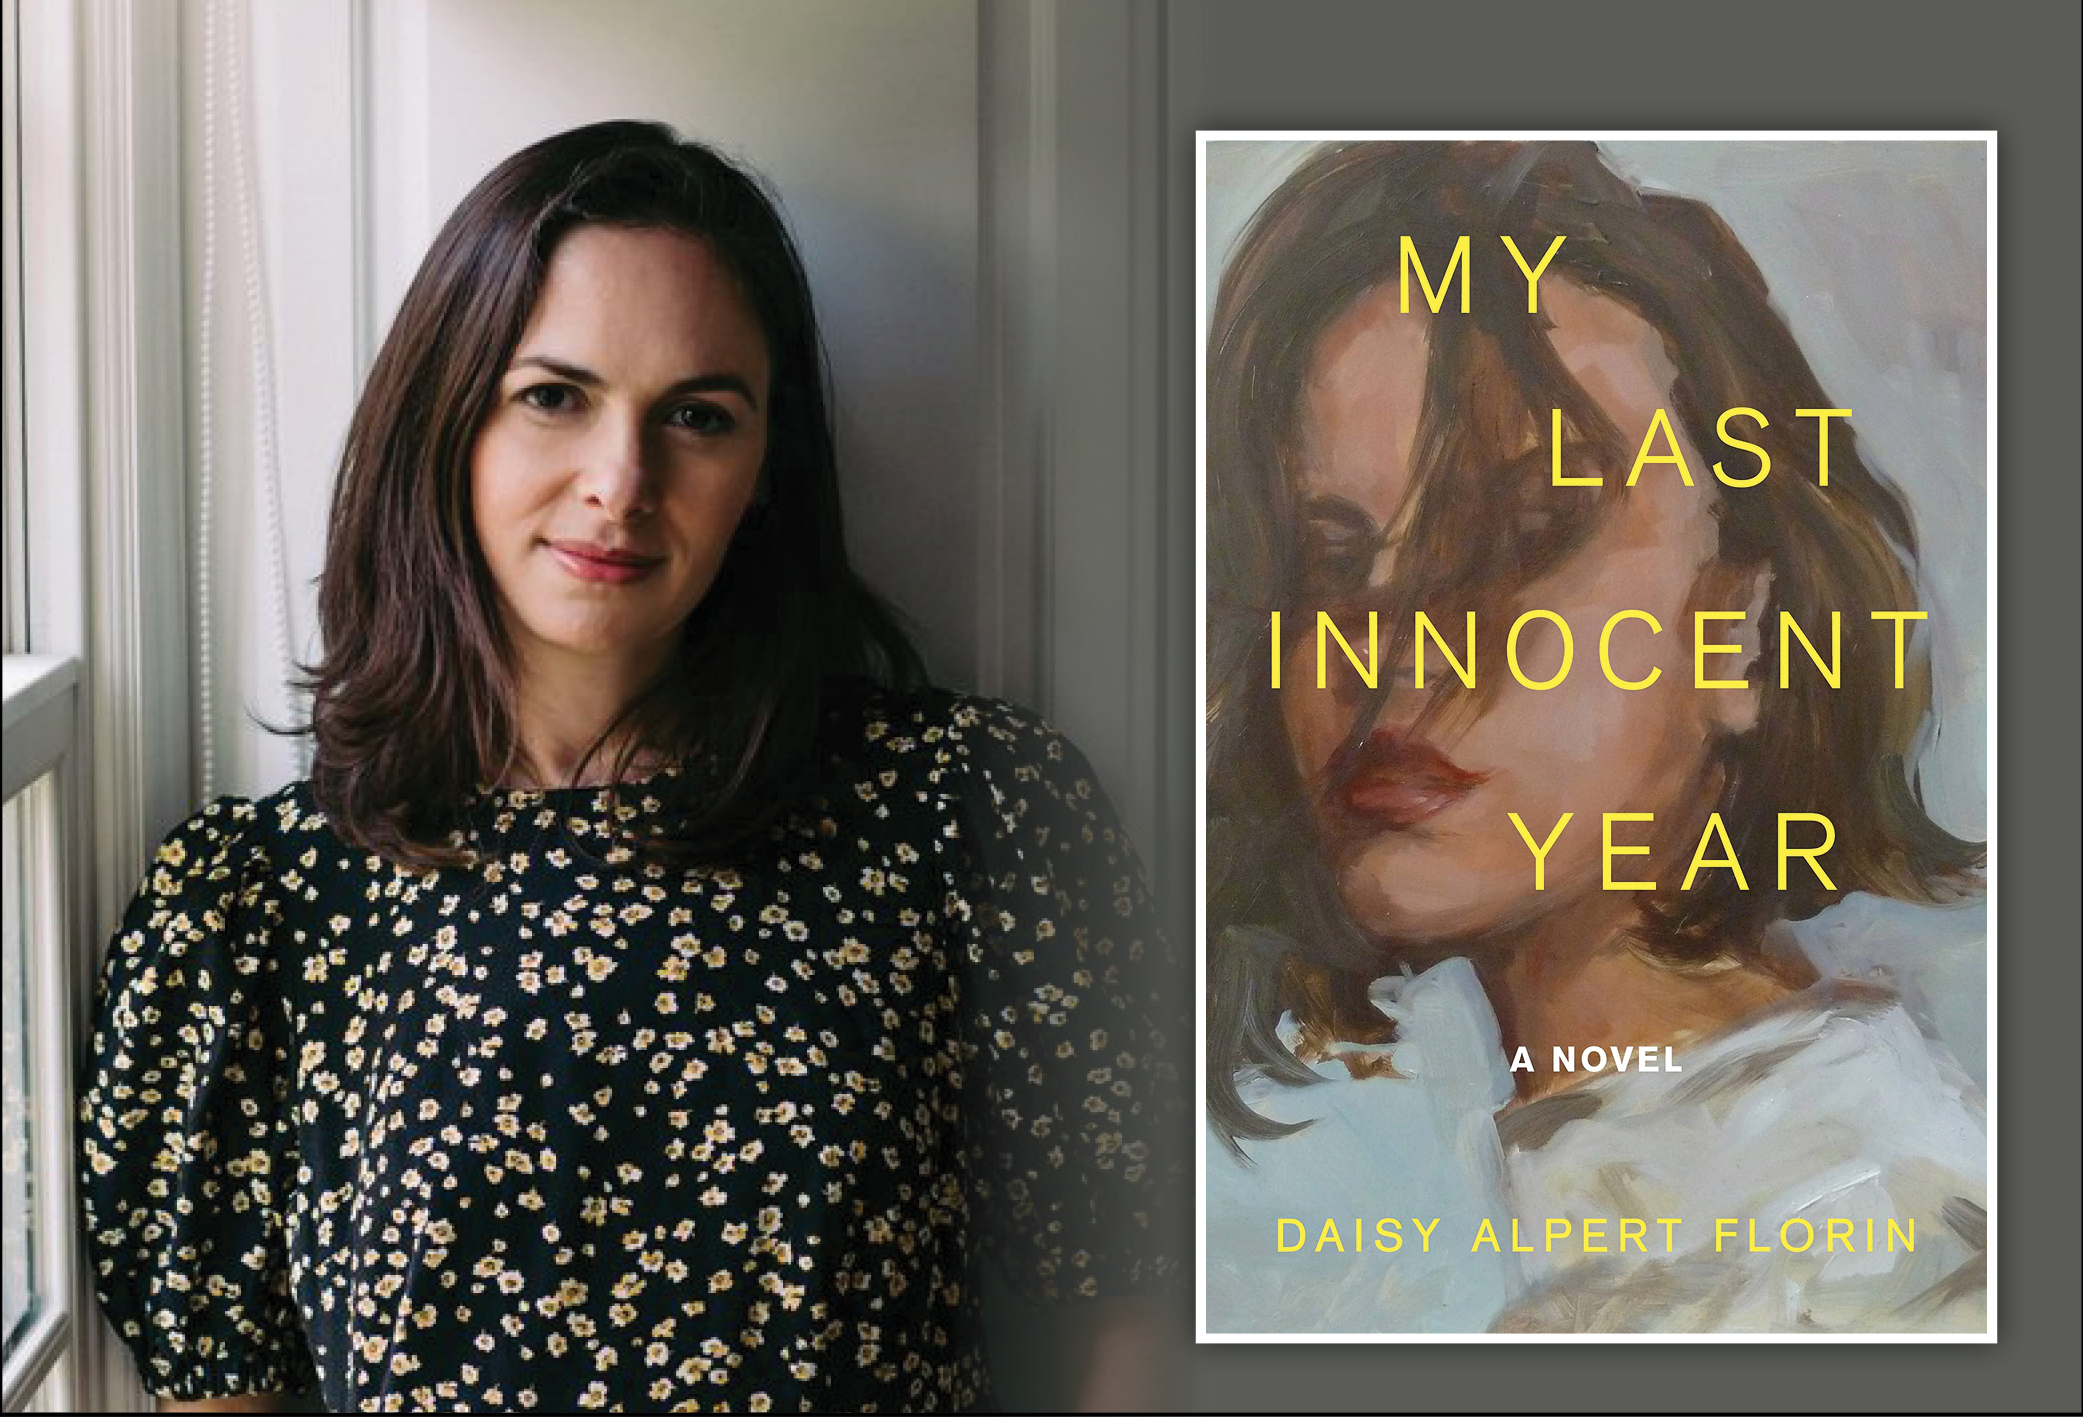 Tuesday, July 30 My Last Innocent Year by Daisy Alpert Florin